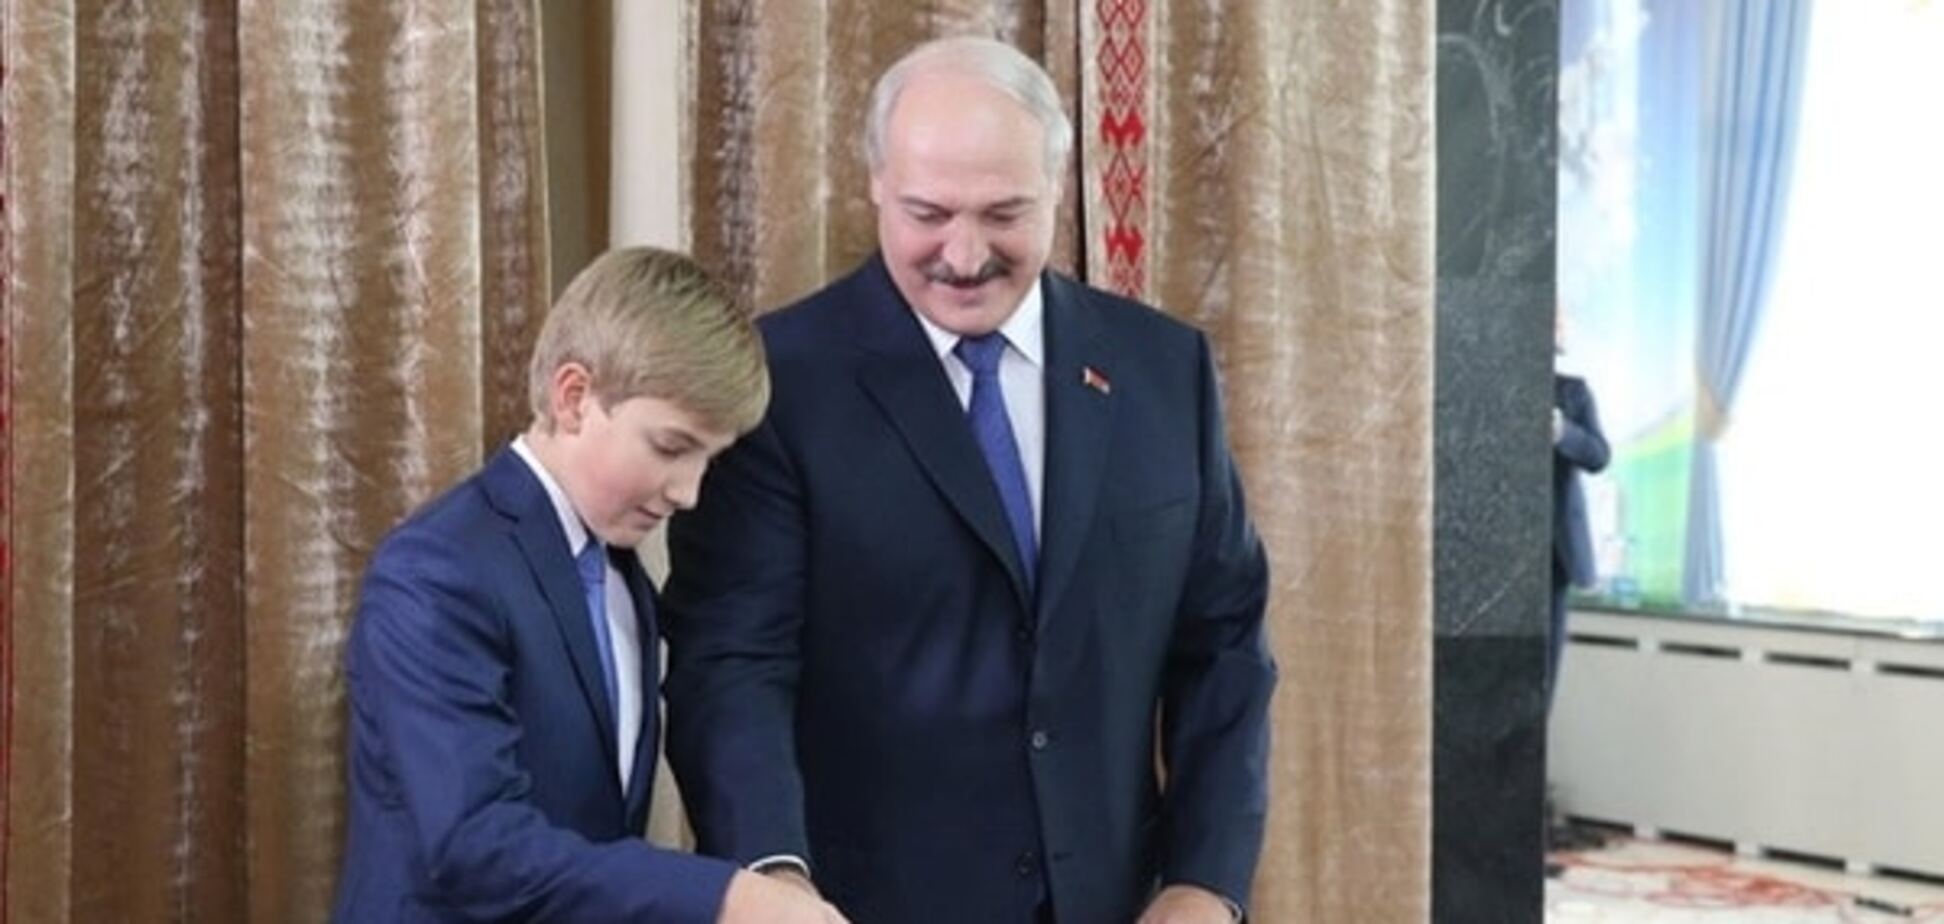 Ще не виграв, вже загрожує: Лукашенко після голосування налякав опозицію